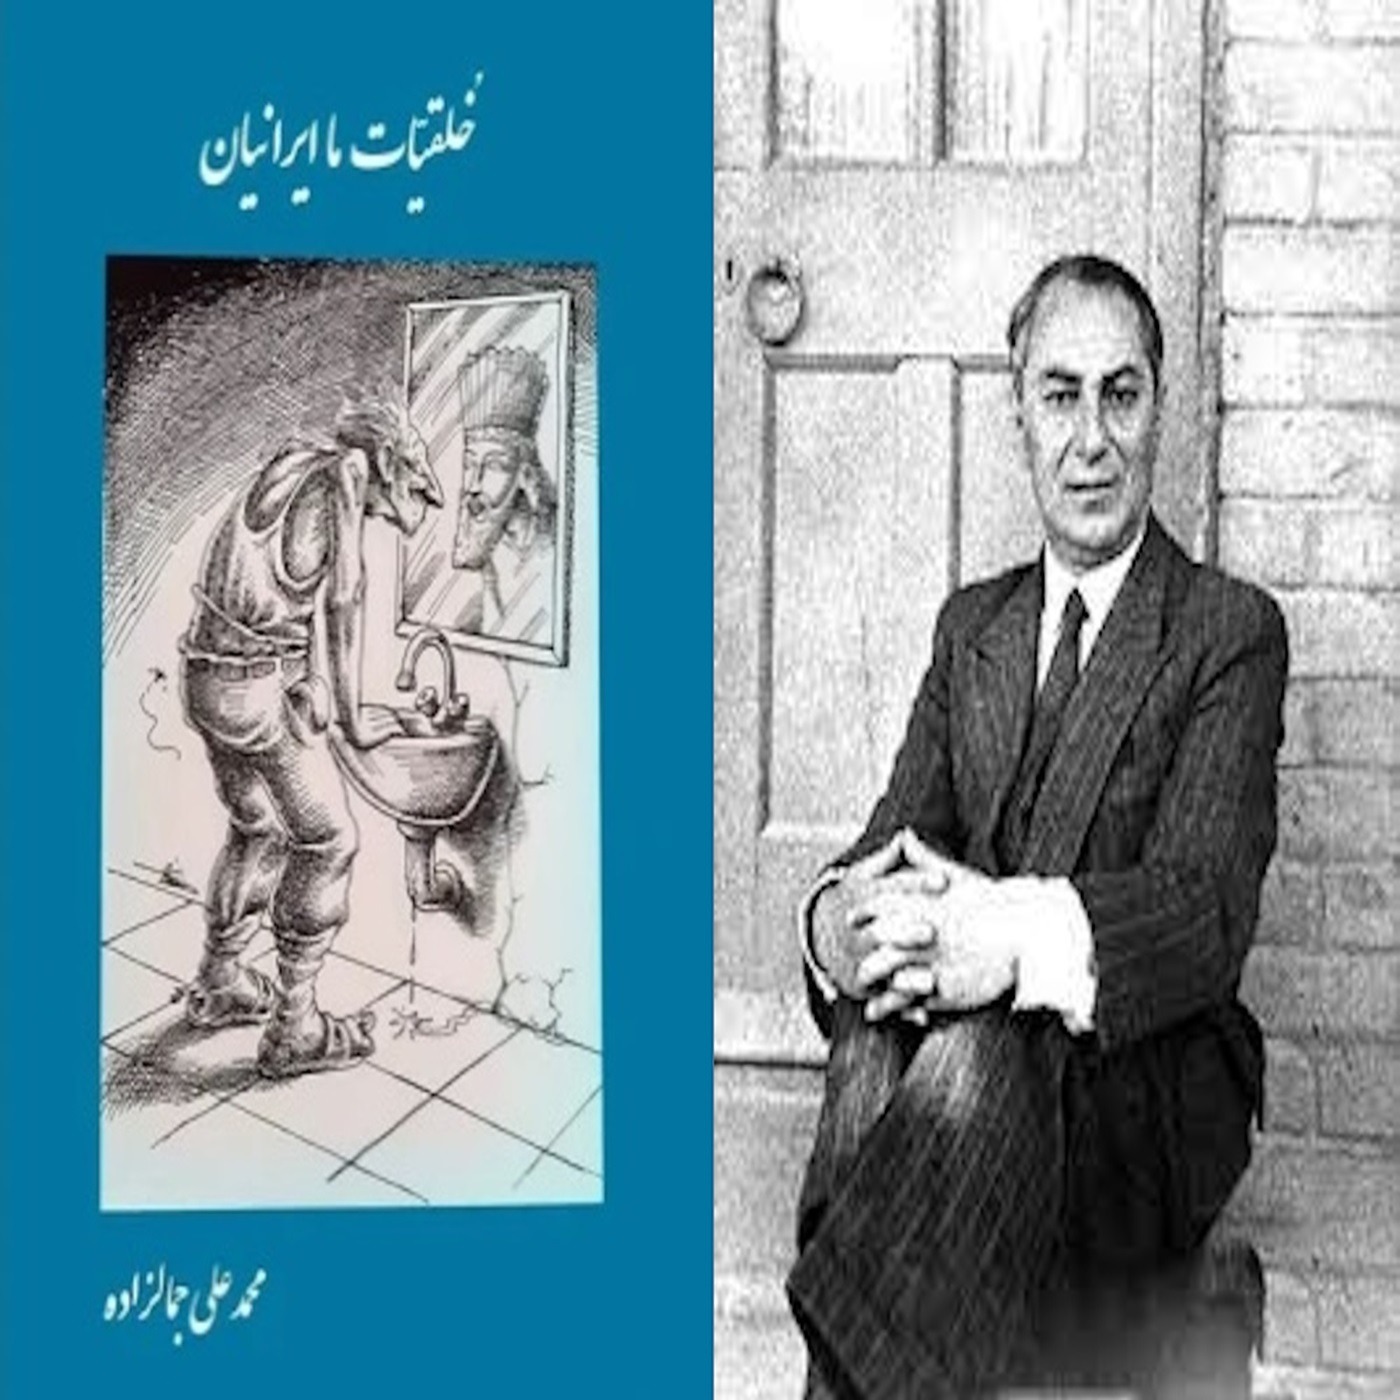 خلقیات ما ایرانیان نوشته سید محمدعلی جمالزاده : بخش چهار از پنچ